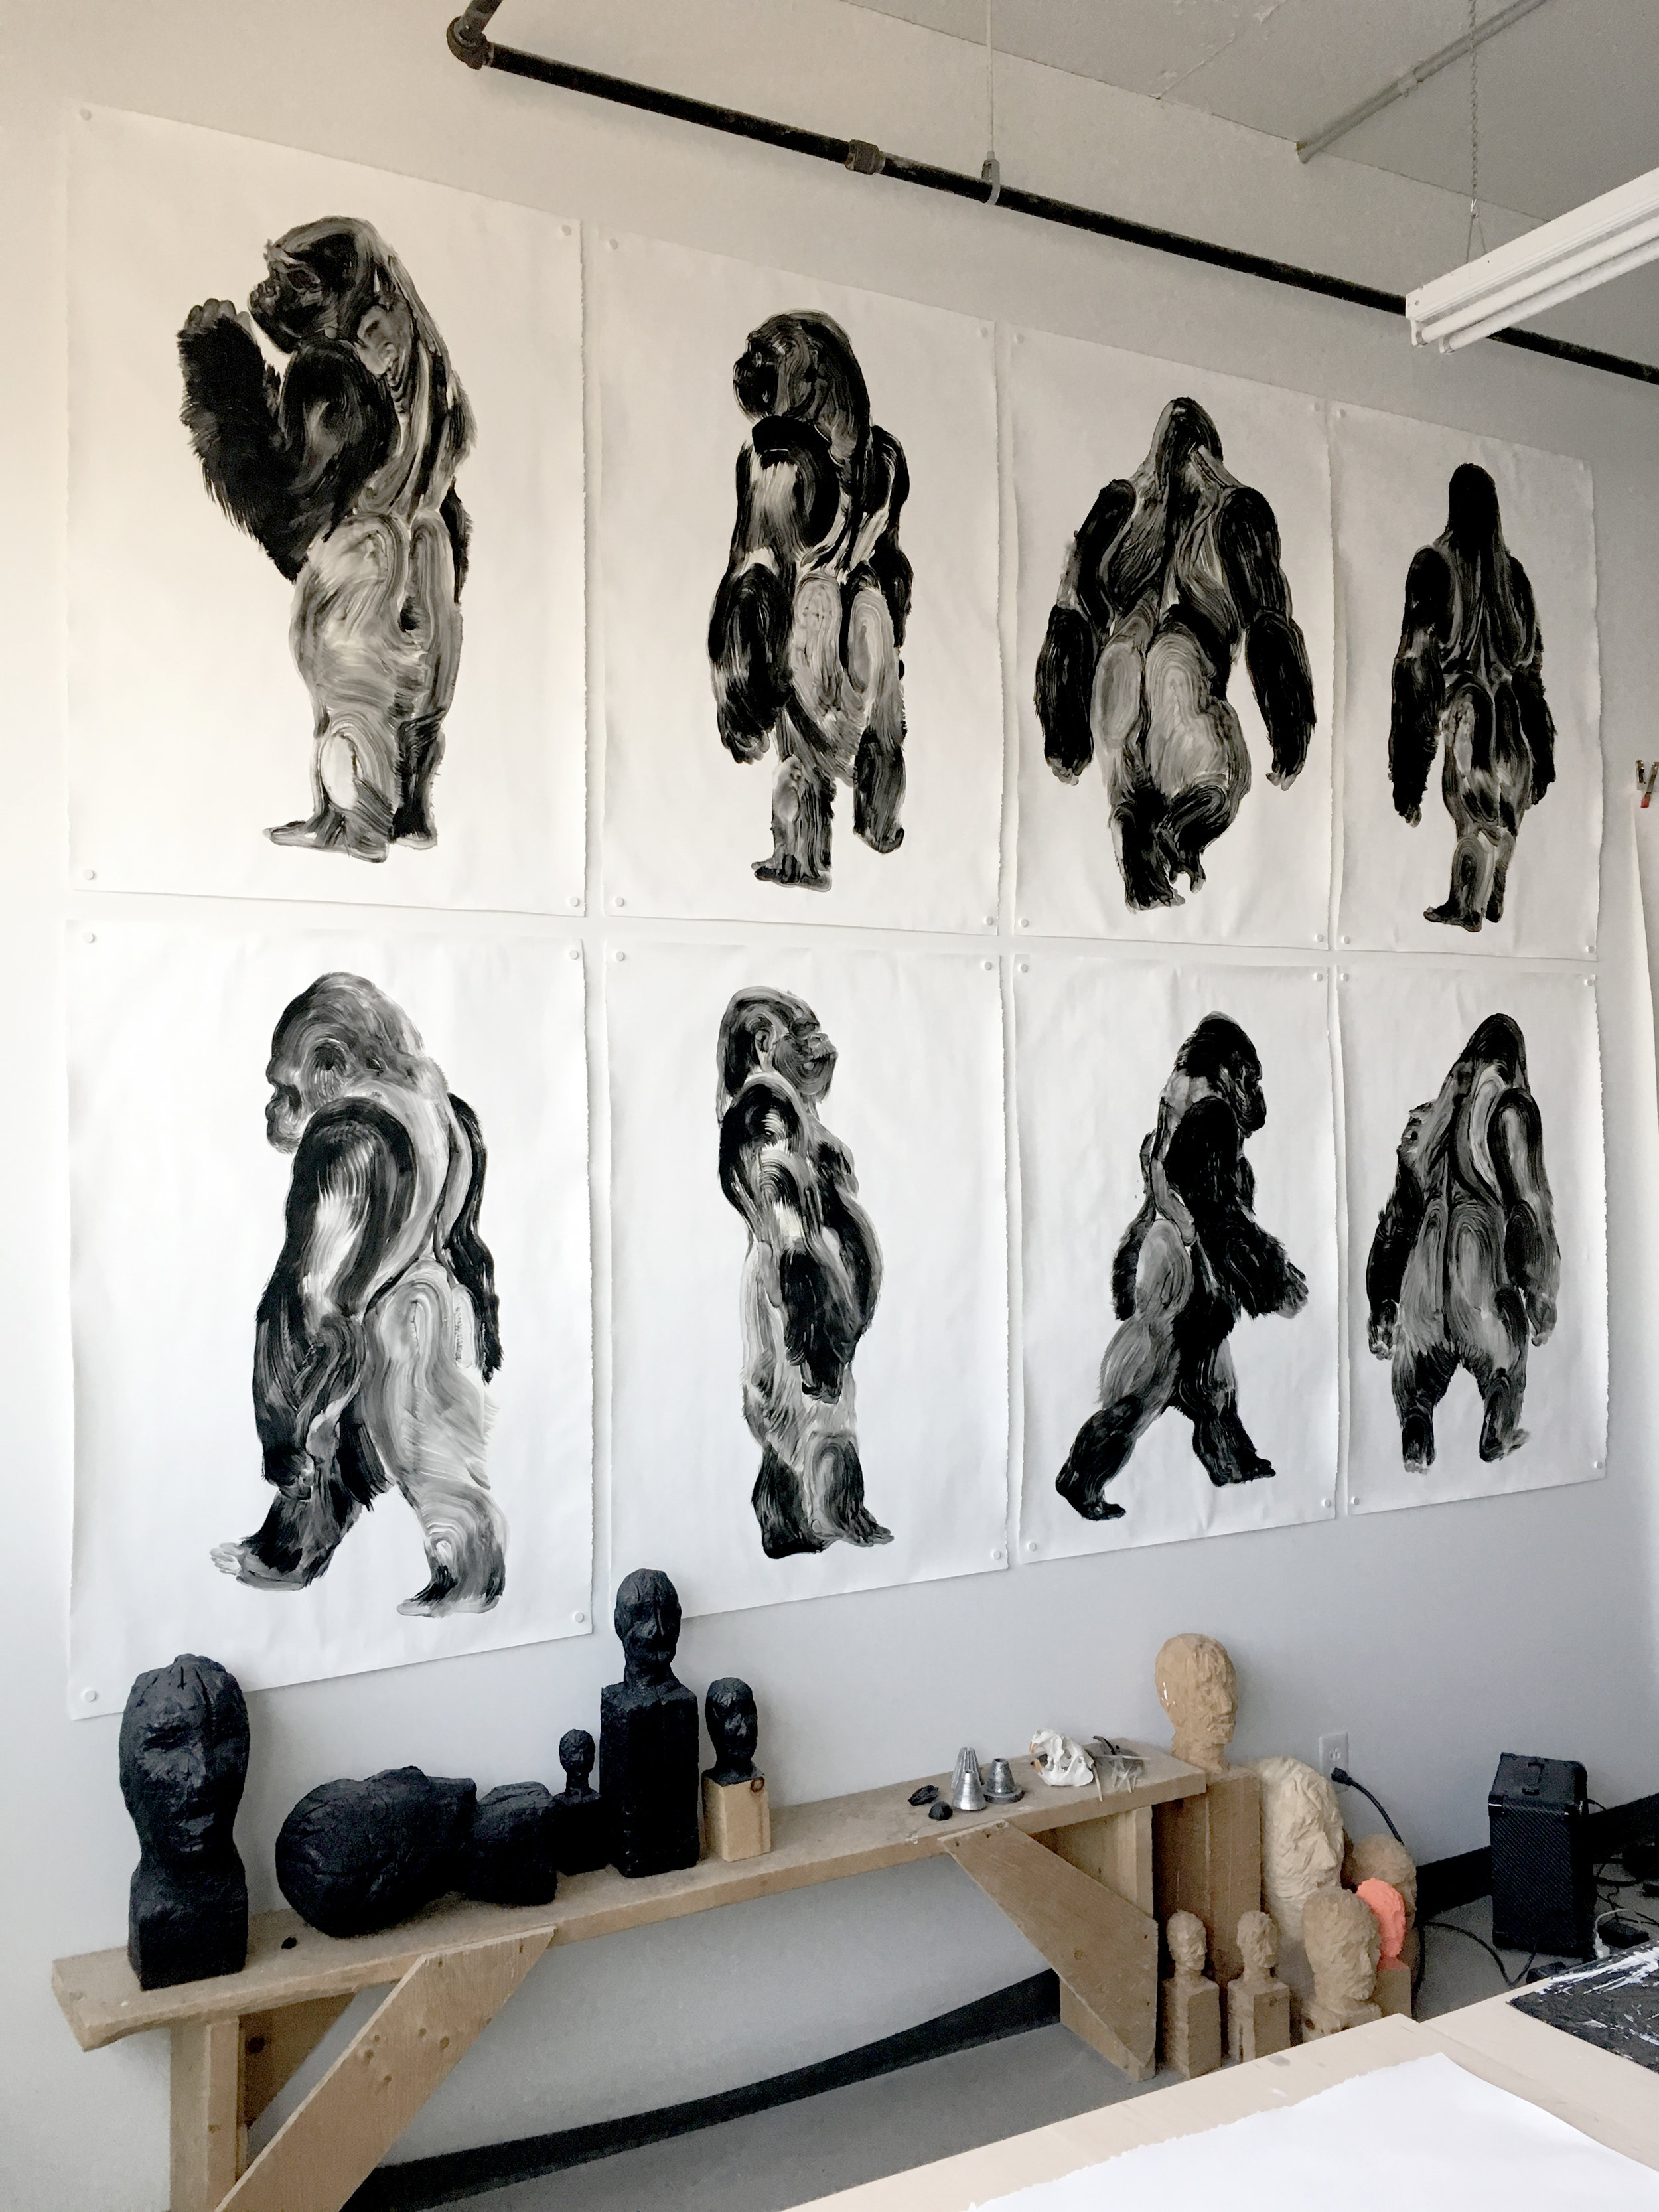  Série des gorilles, sculpture à la chainsaw  Atelier sur De Gaspé    